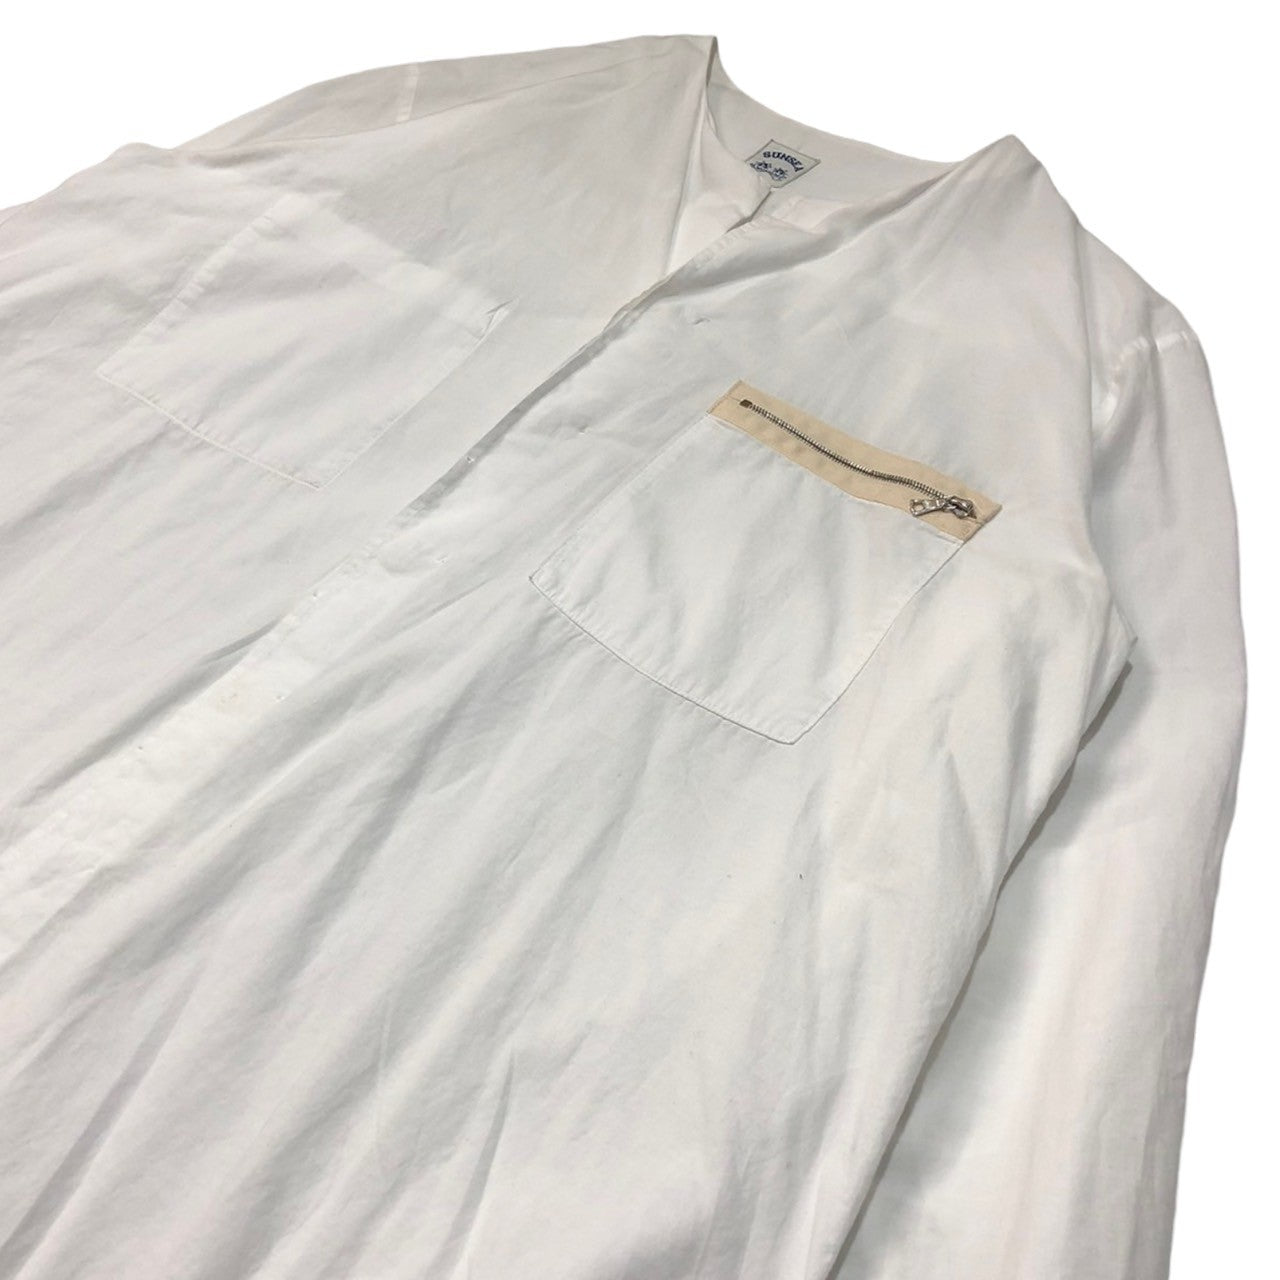 SUNSEA(サンシー) 17SS Exploration Shirt エクスプロージョン シャツ 17S14 SIZE 3(L) ホワイト